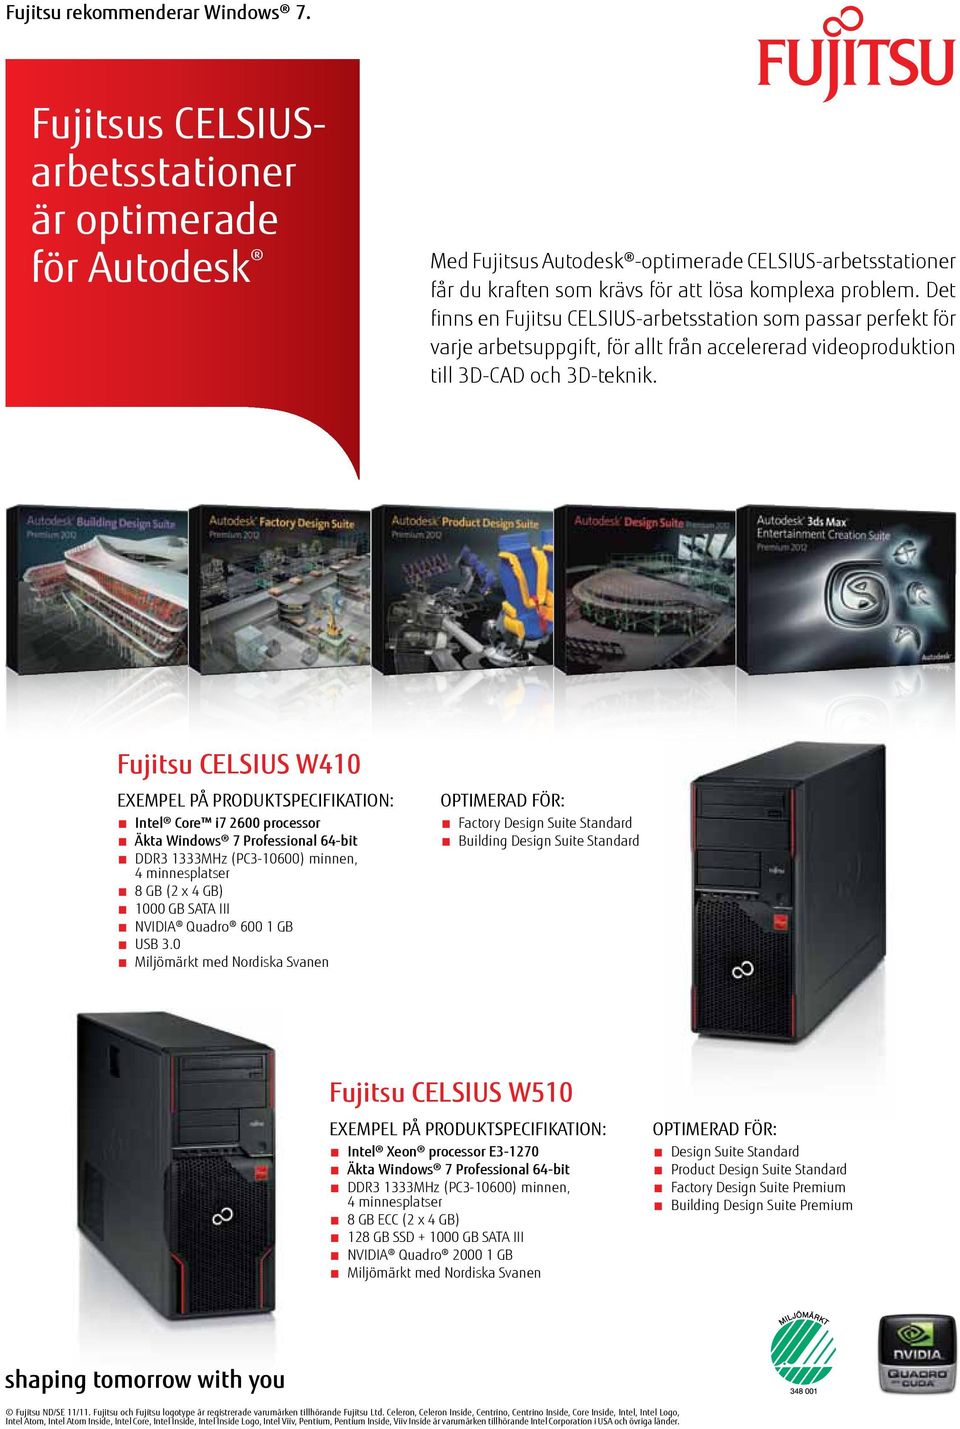 Det finns en Fujitsu CELSIUS-arbetsstation som passar perfekt för varje arbetsuppgift, för allt från accelererad videoproduktion till 3D-CAD och 3D-teknik.